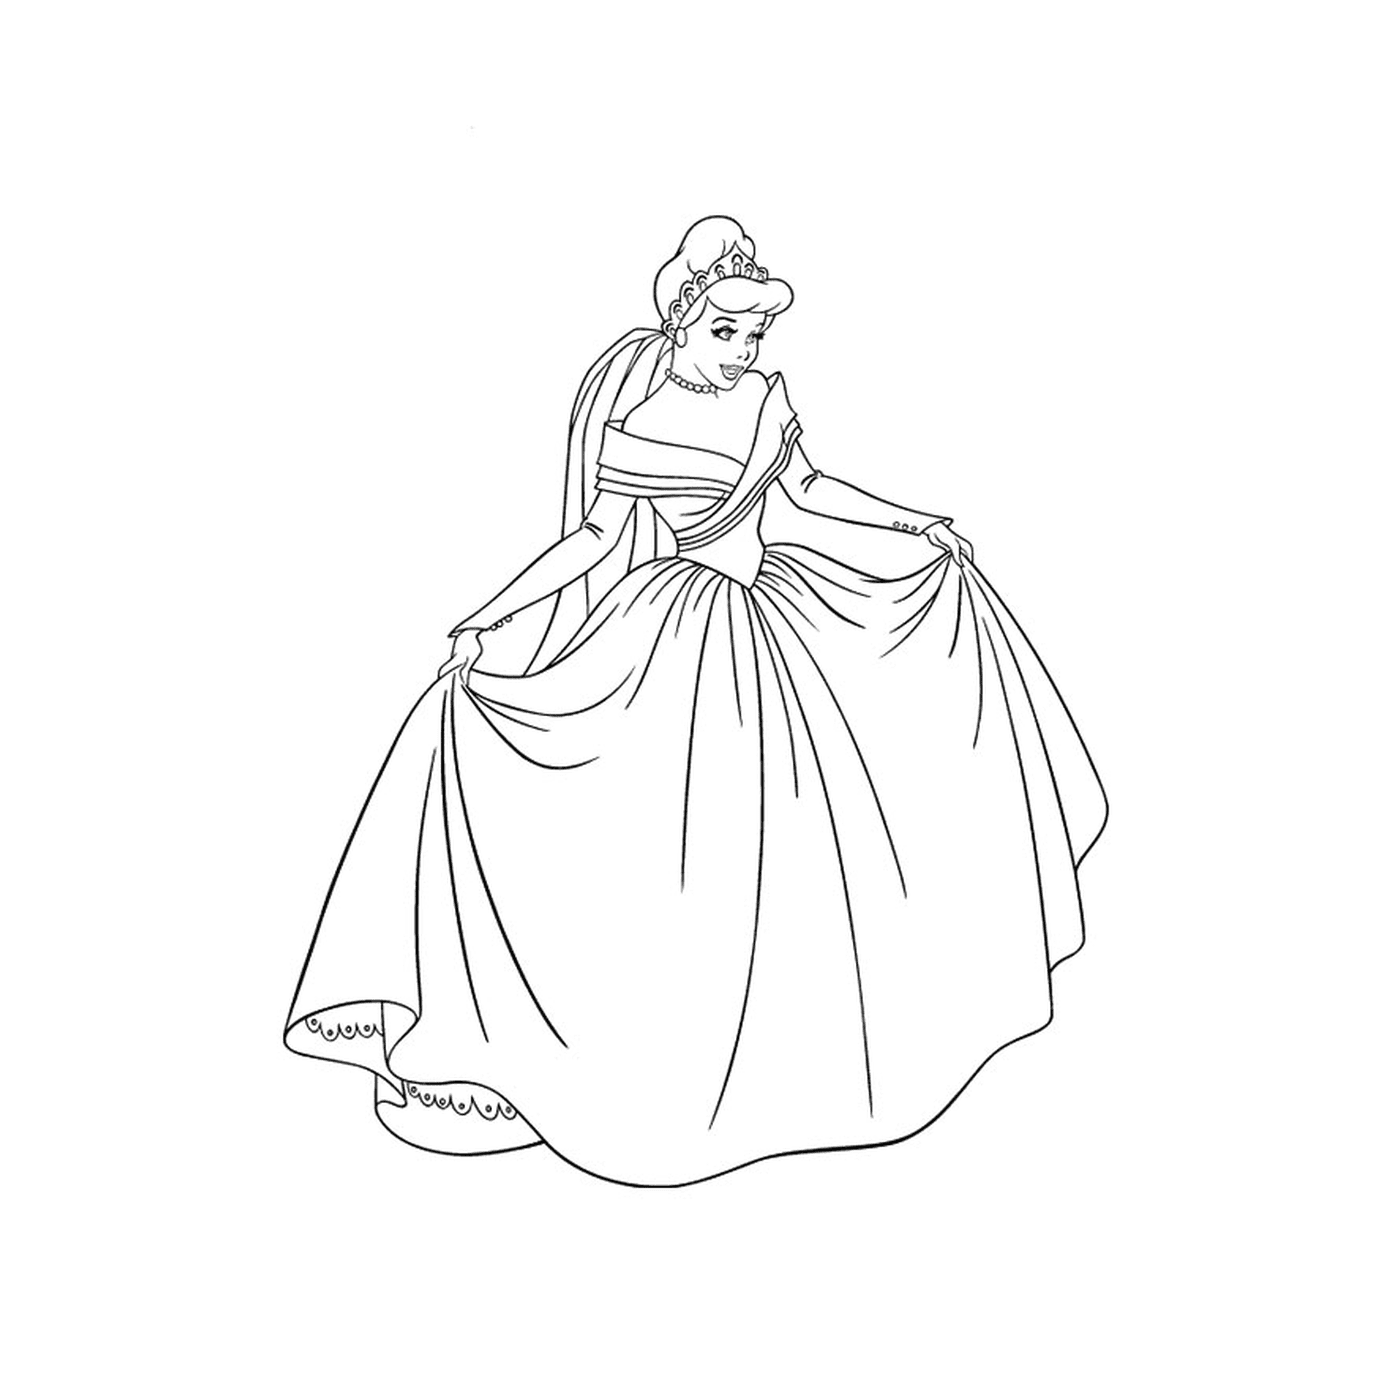  穿裙子的优雅公主 